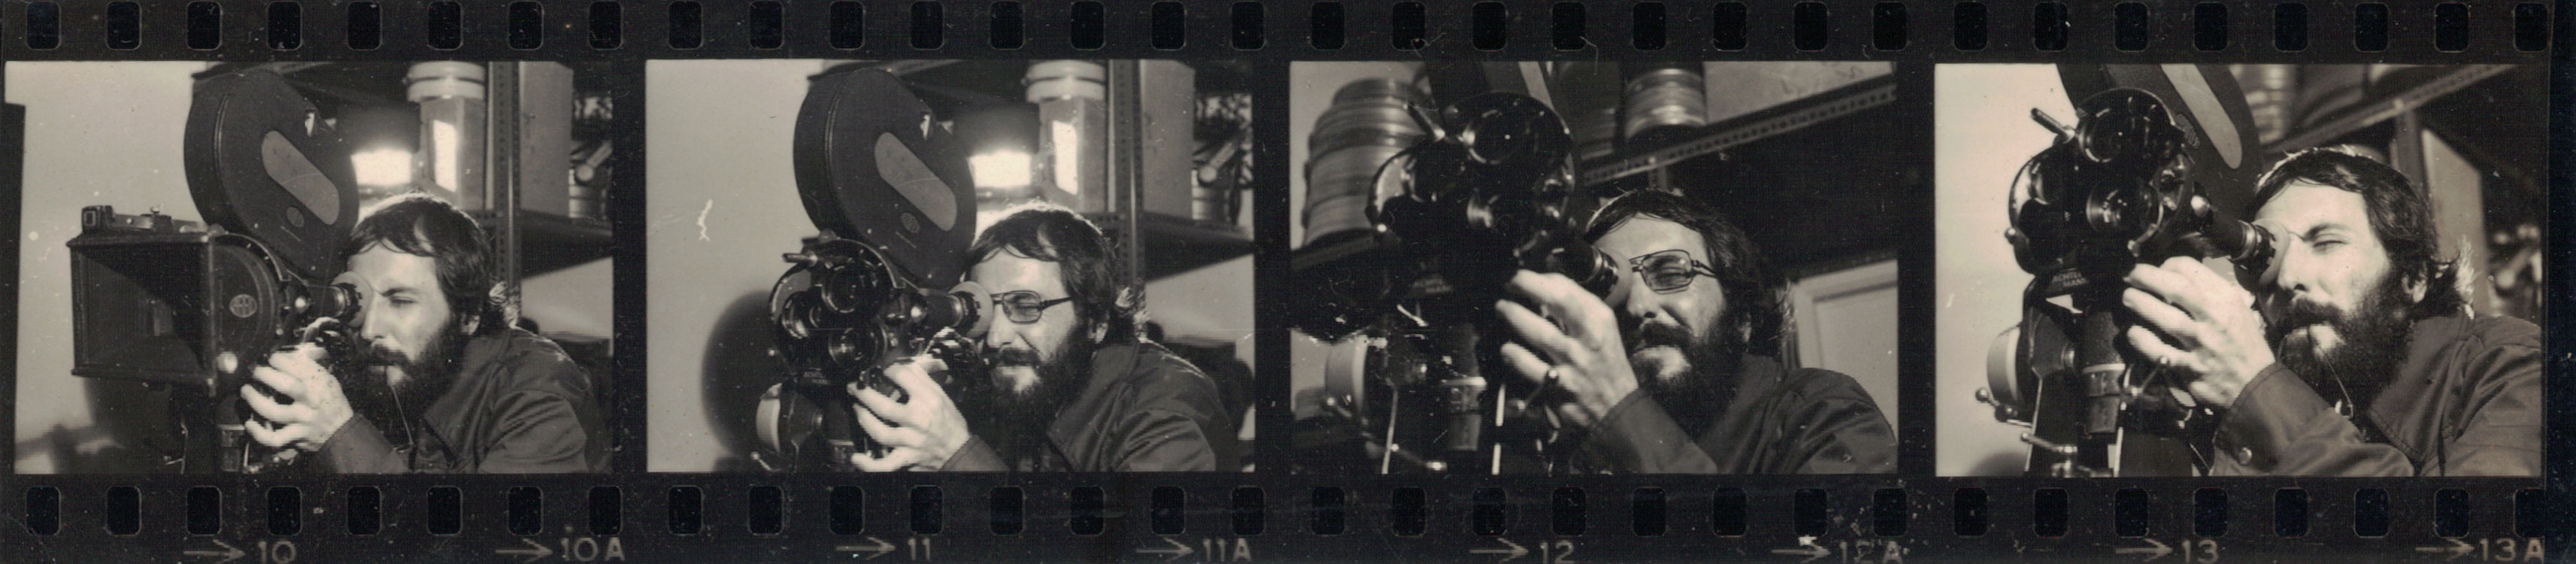 Trecho de negativo de imagem no qual Ramon Alvarado opera câmera cinematográfica e olha através de seu visor. Imagem preto e branco. Fotógrafo(a) não identificado(a).